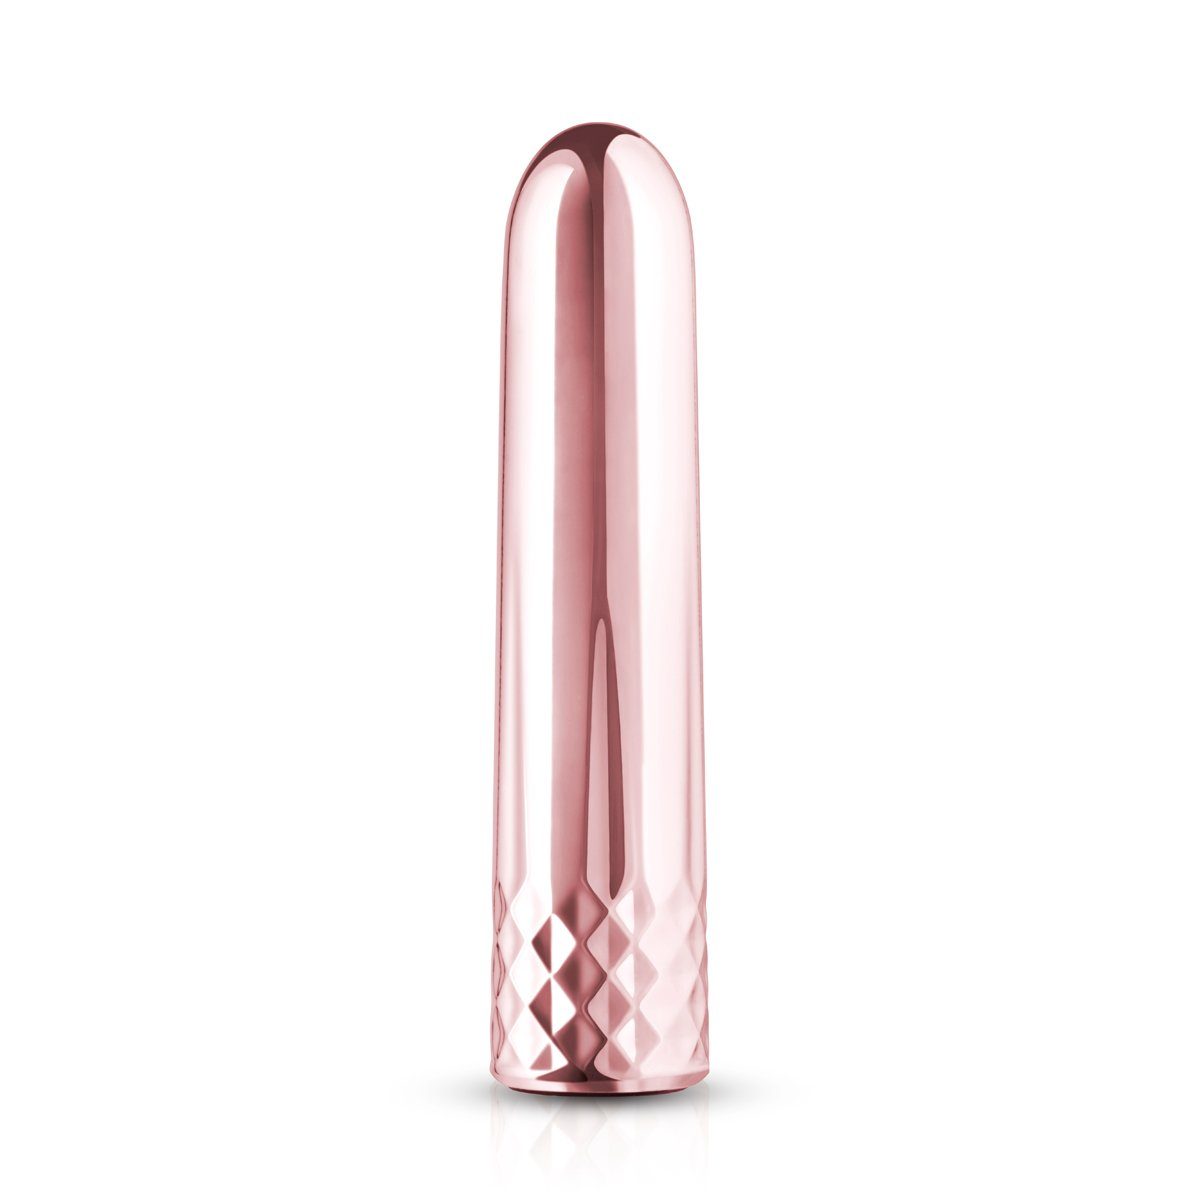 Rosy Gold Mini-Vibrator Nouveau Minivibrator Bullet Vibrator Rosegold